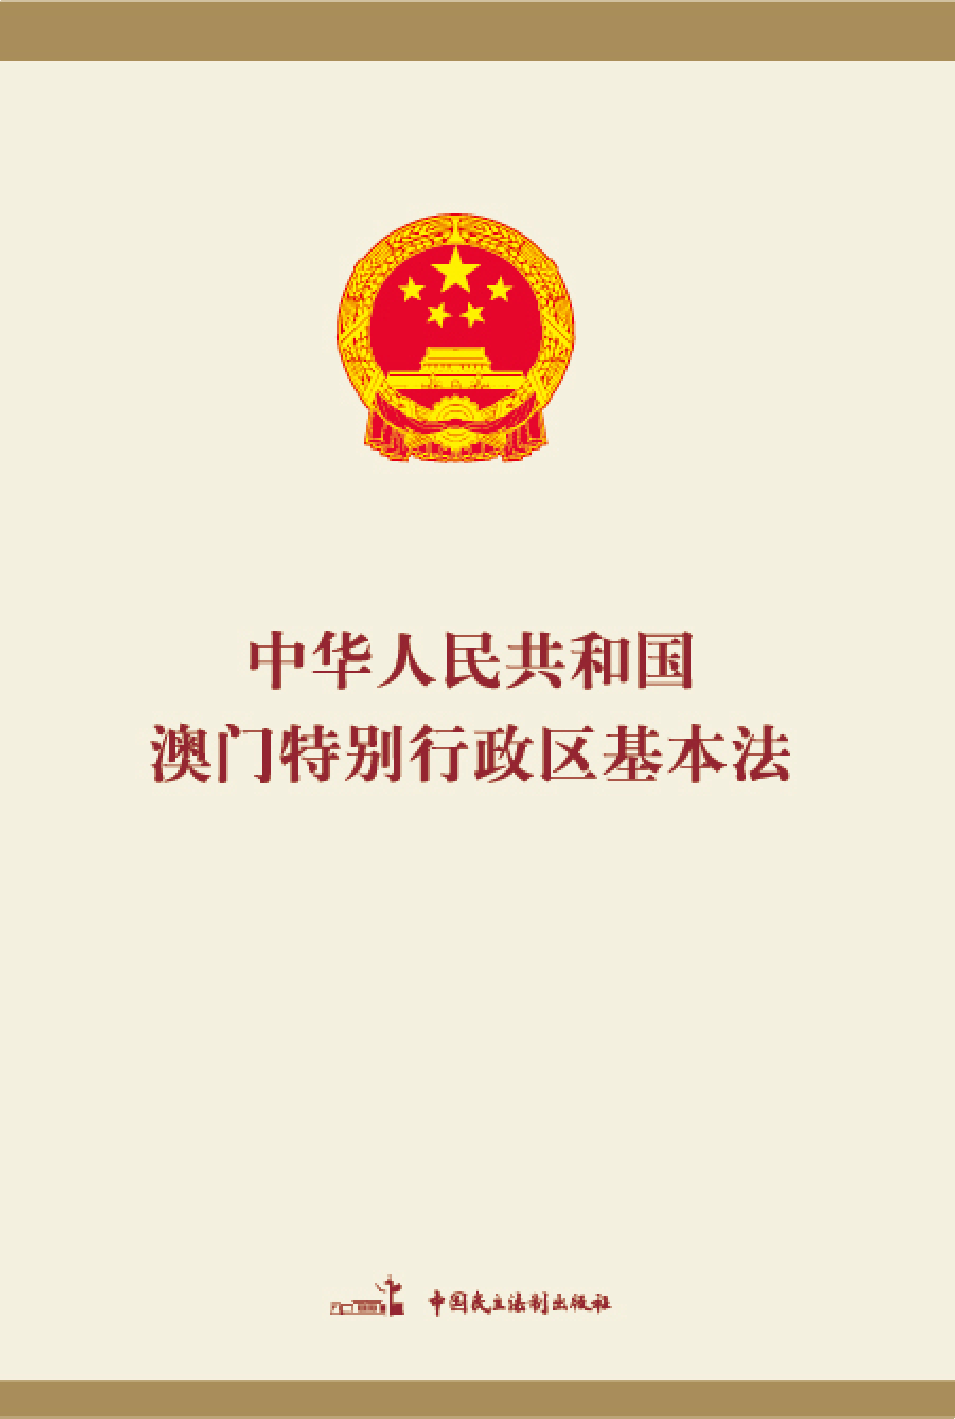 中华人民共和国澳门特别行政区基本法(中英文对照版)